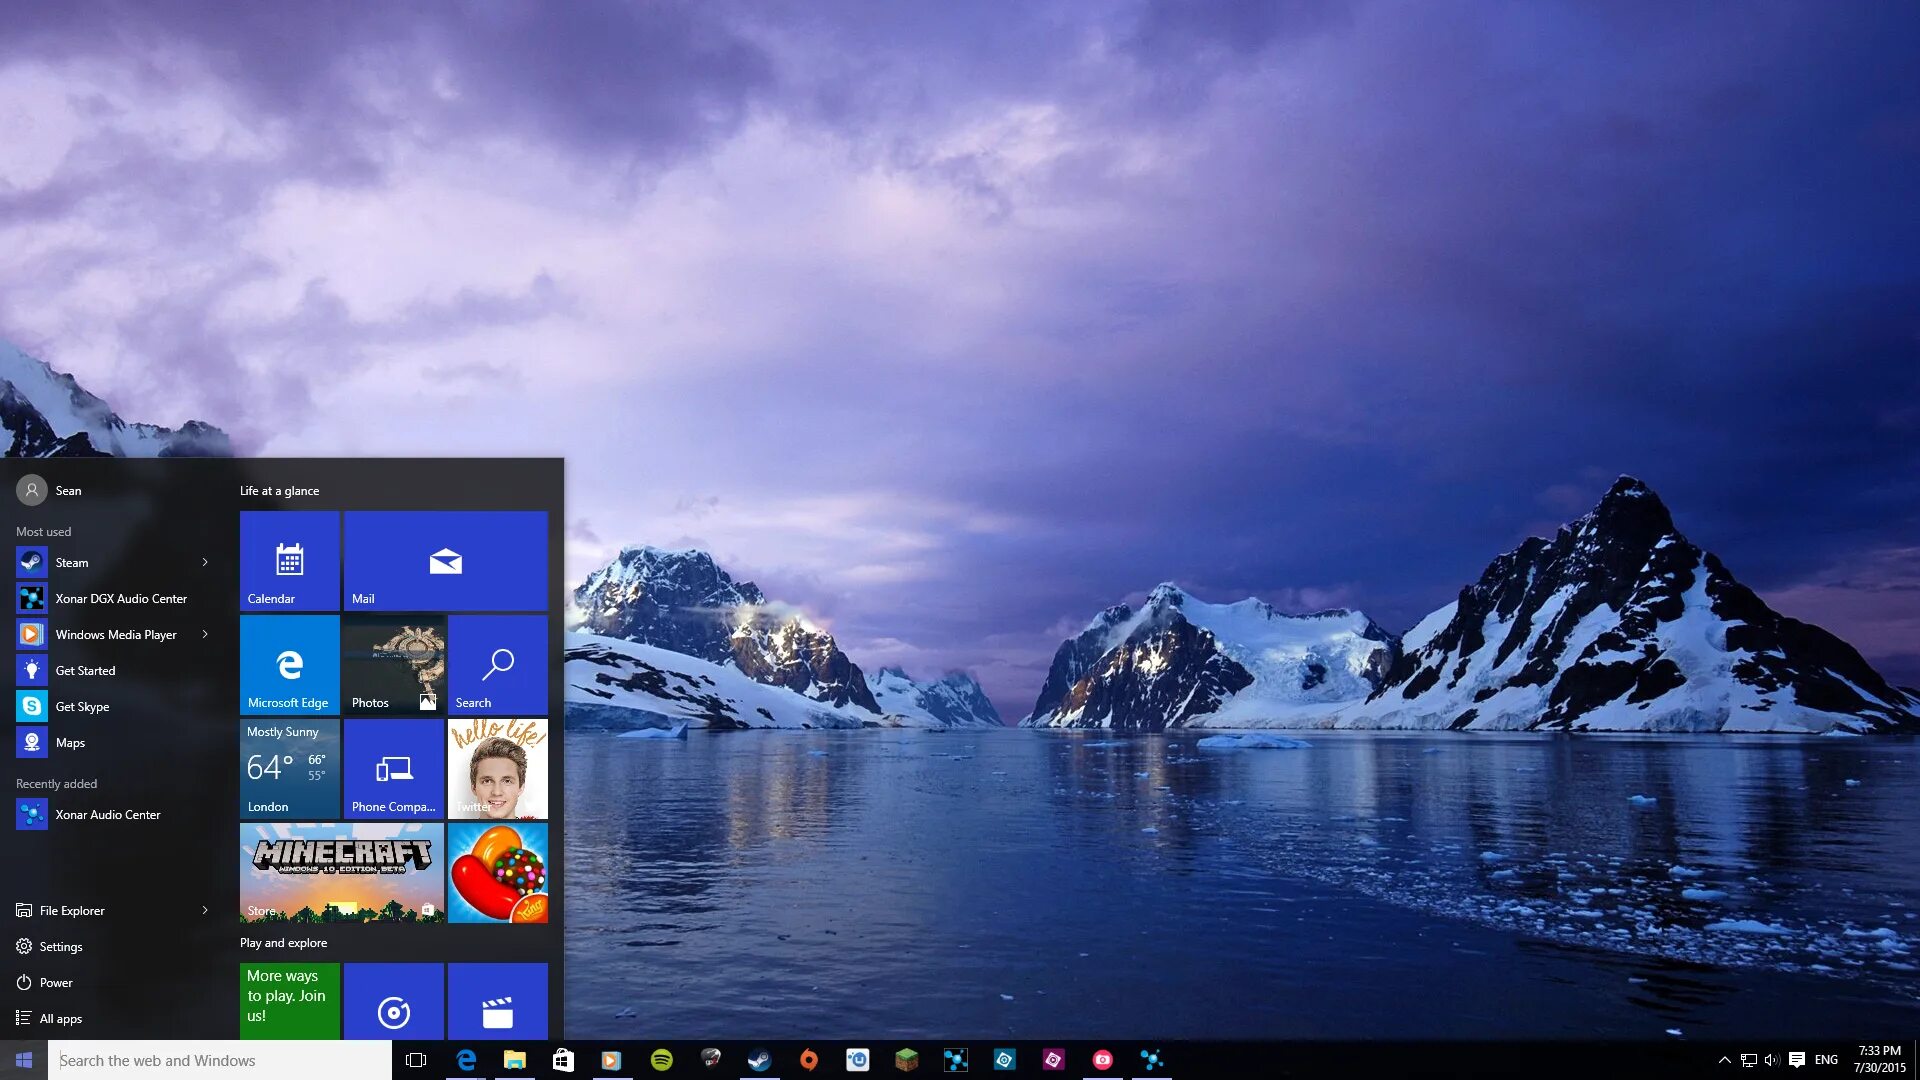 Windows 10 200. Рабочий стол Windows 10. Картинки Windows 10. Изображения для рабочего стола Windows 10. Фоновые рисунки Windows 10.